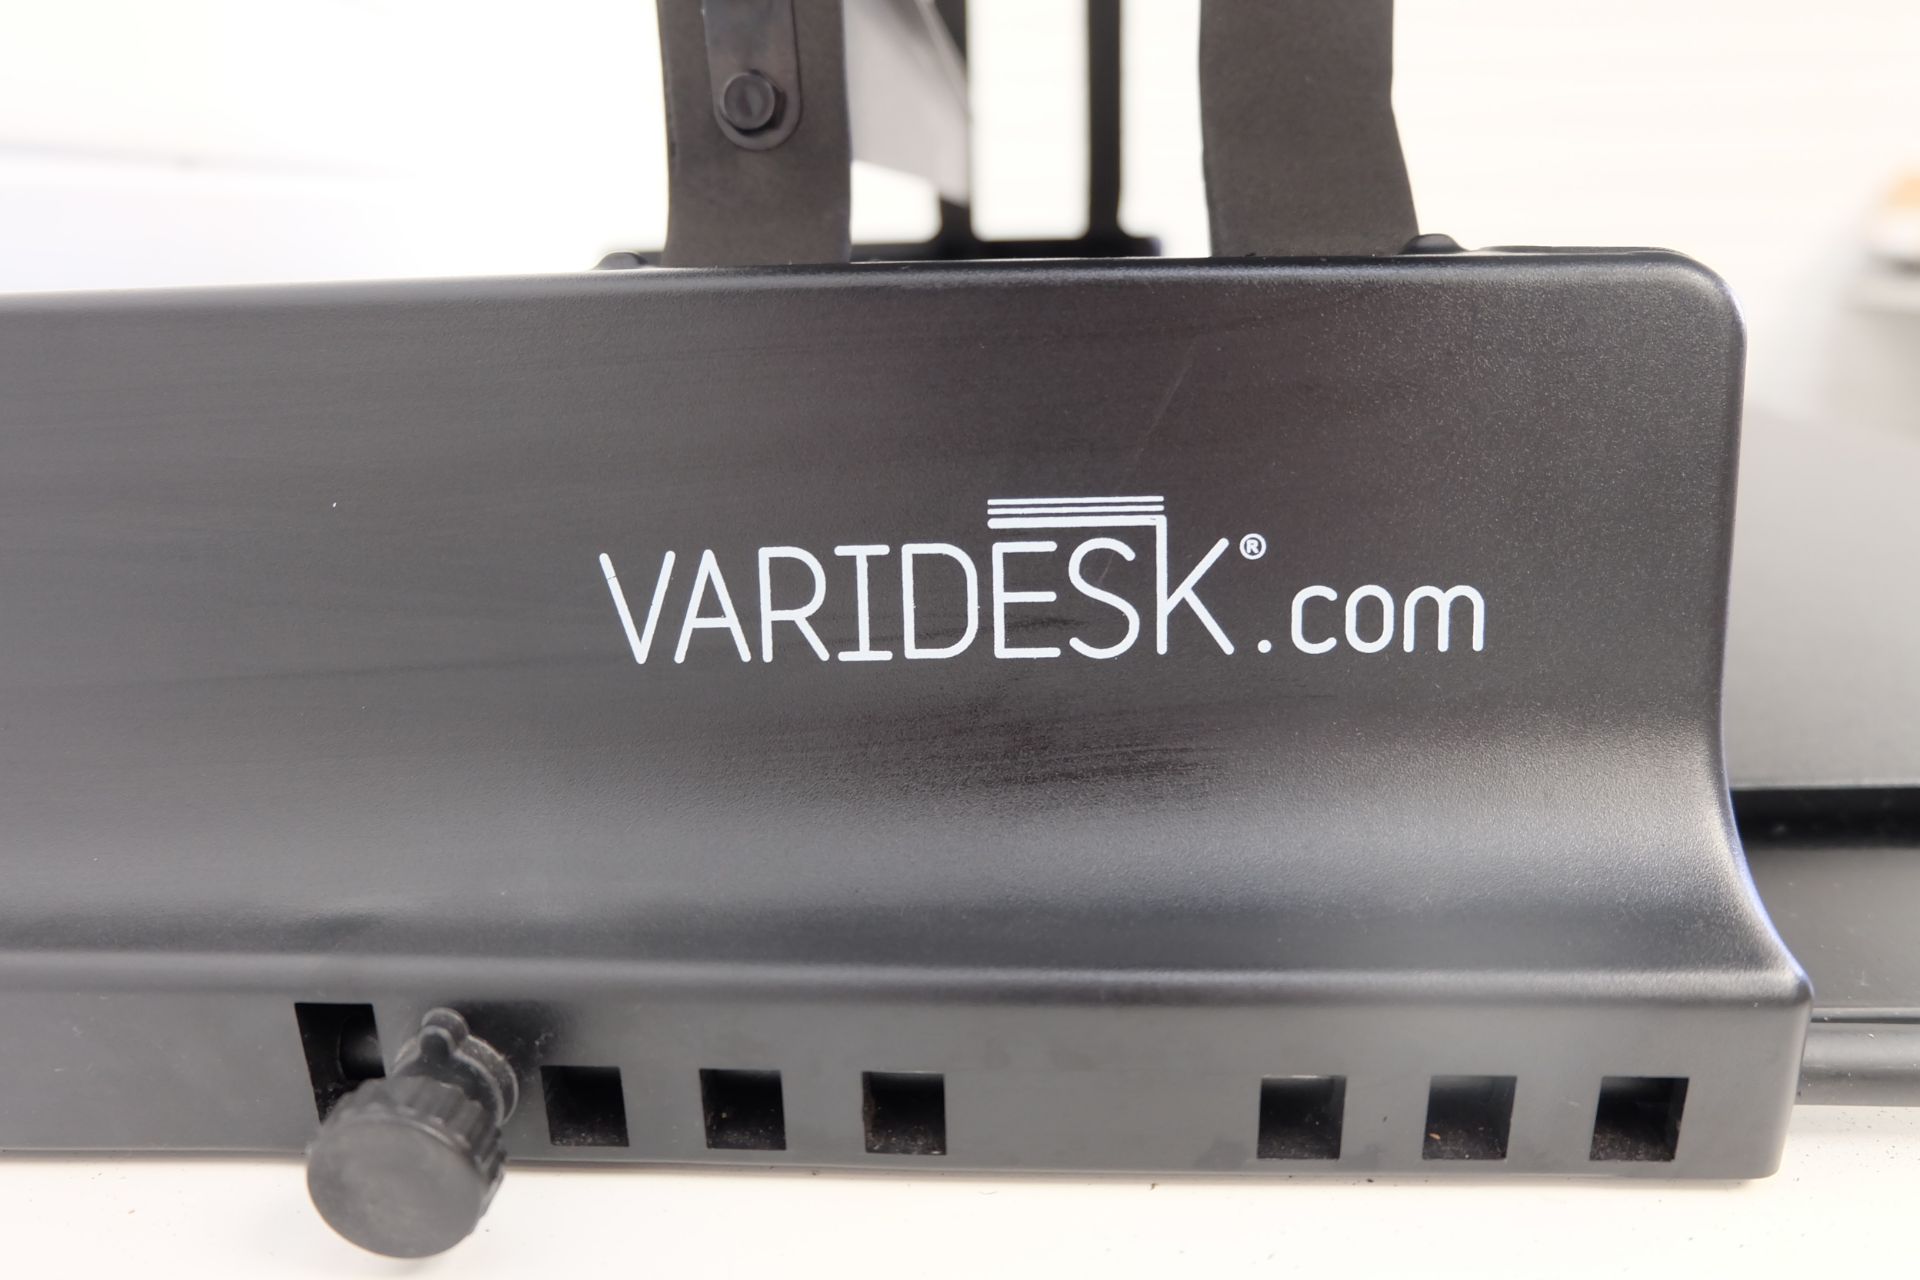 Varidesk.com Adjustable Standing Desk. Variable Heights. Sliding Keyboard Shelf. 36" Wide. 15.5" Max - Image 3 of 4